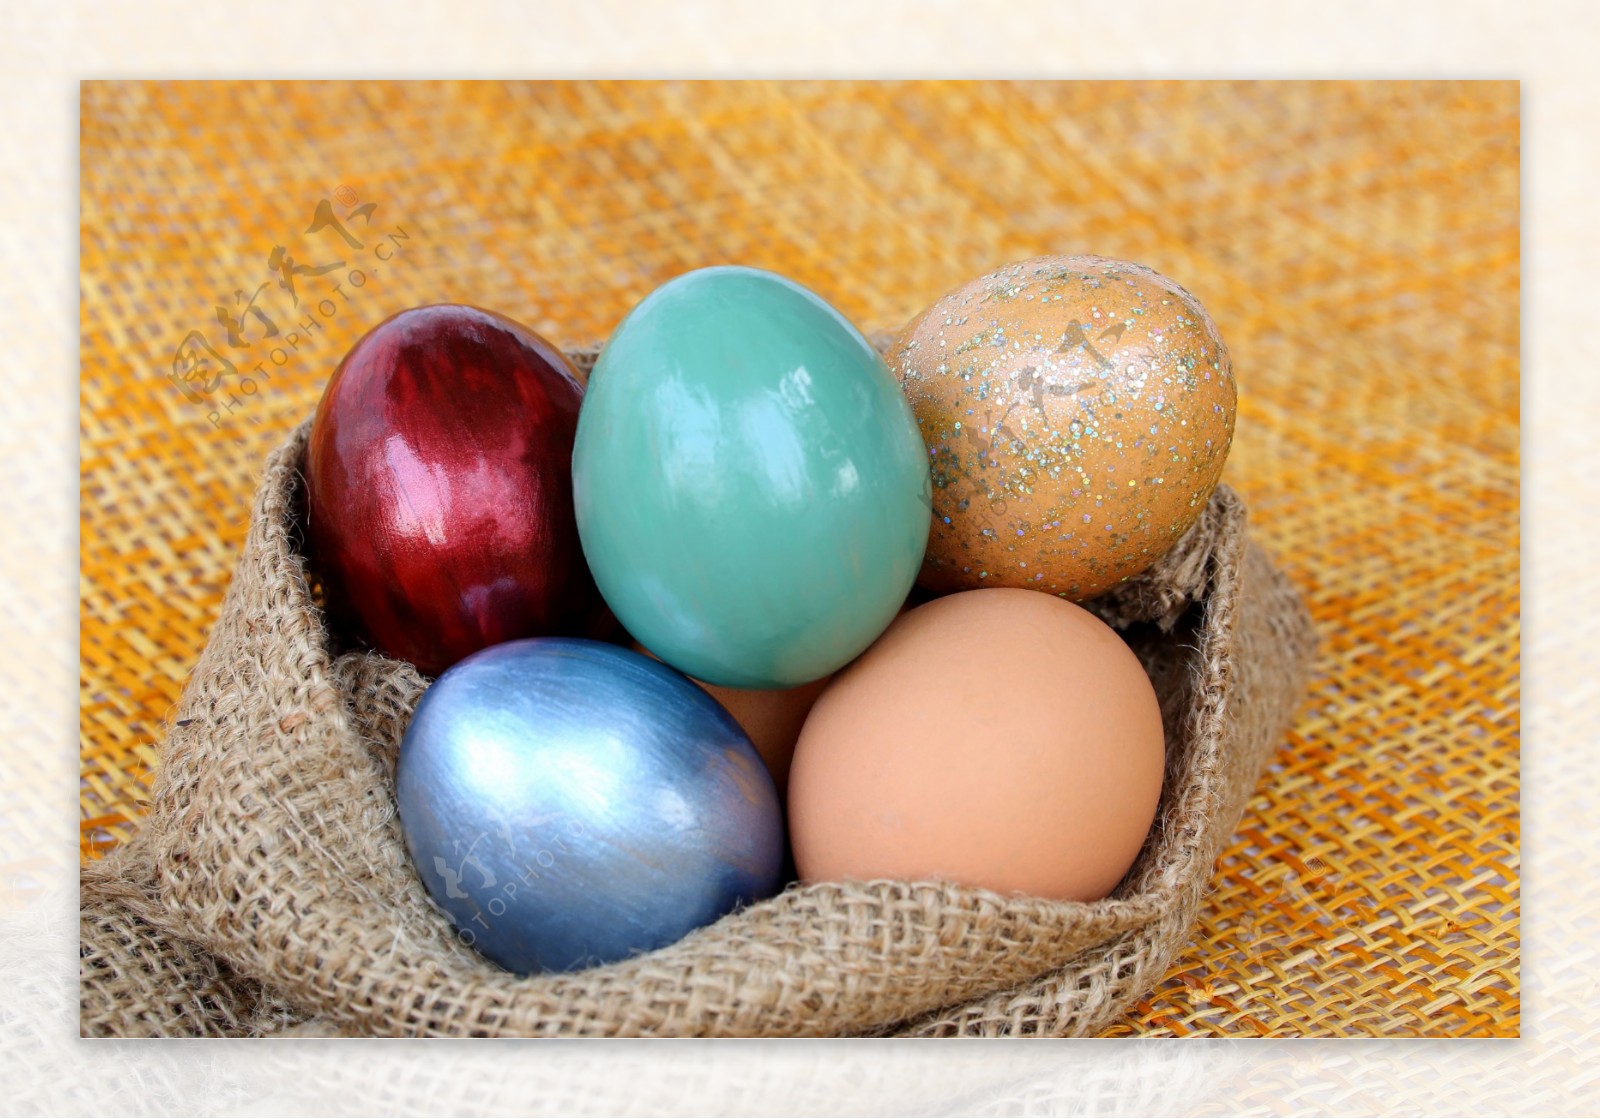 麻布袋里的复活节彩蛋图片